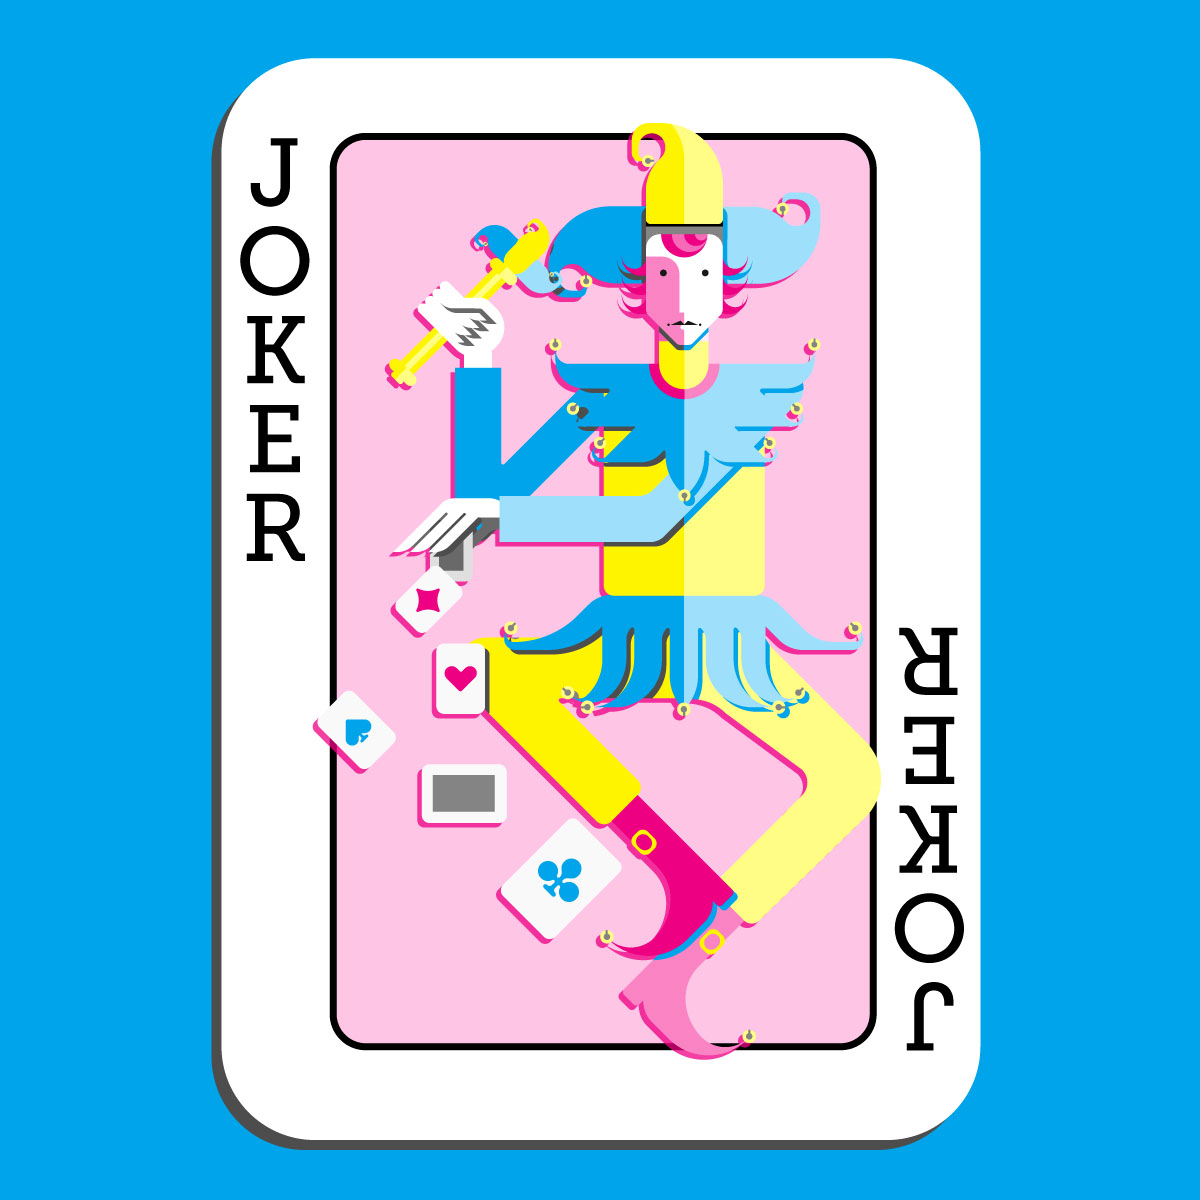 A Joker Card